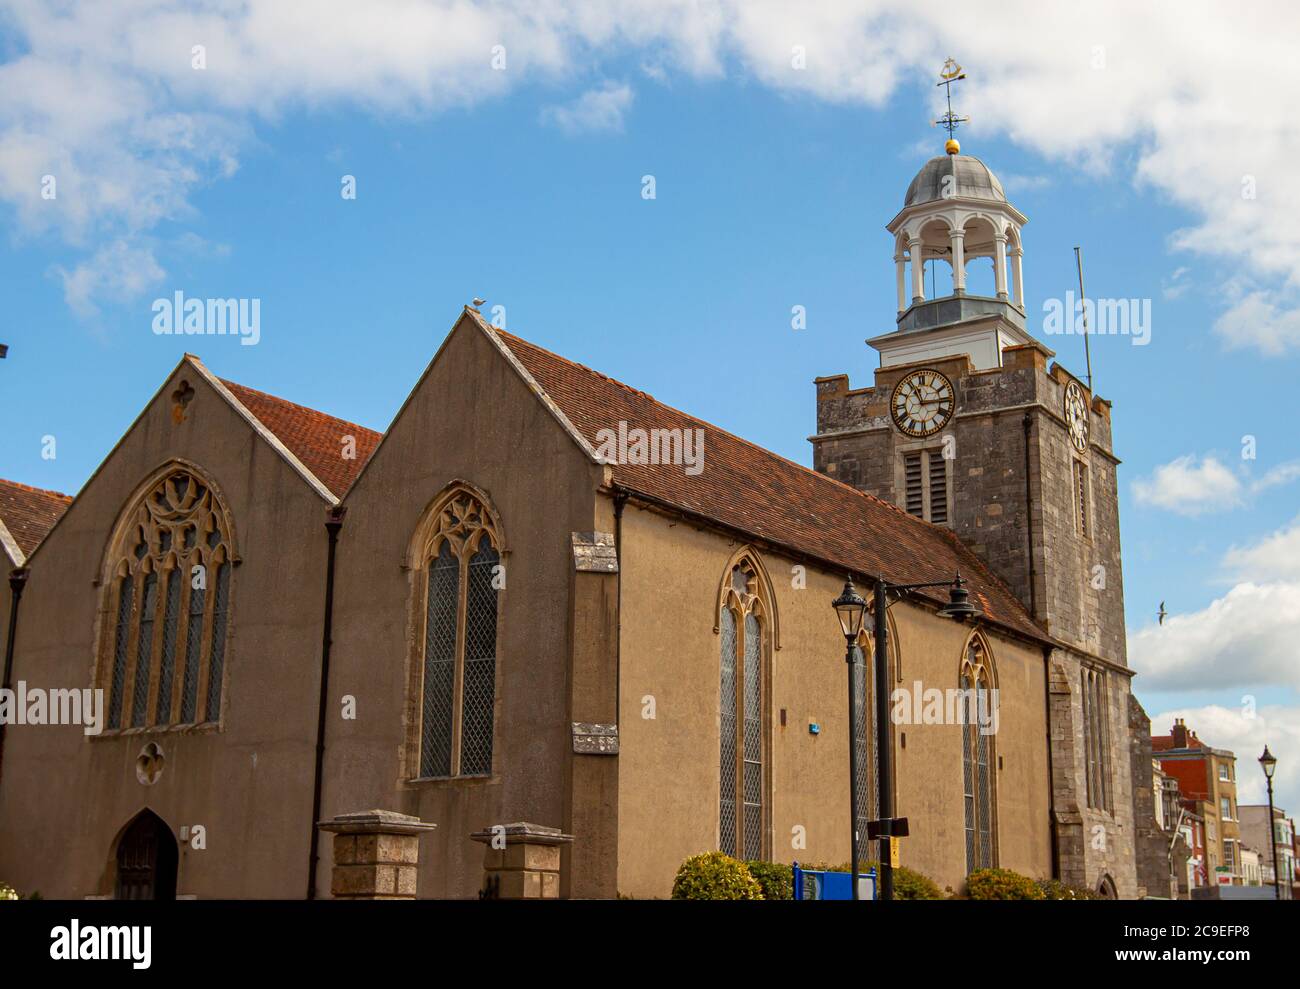 Nahaufnahme der historischen Kirche St. Thomas der Apostel, die größte anglikanische Kirche in Lymington, Großbritannien. Bild zeigt das Äußere vi Stockfoto